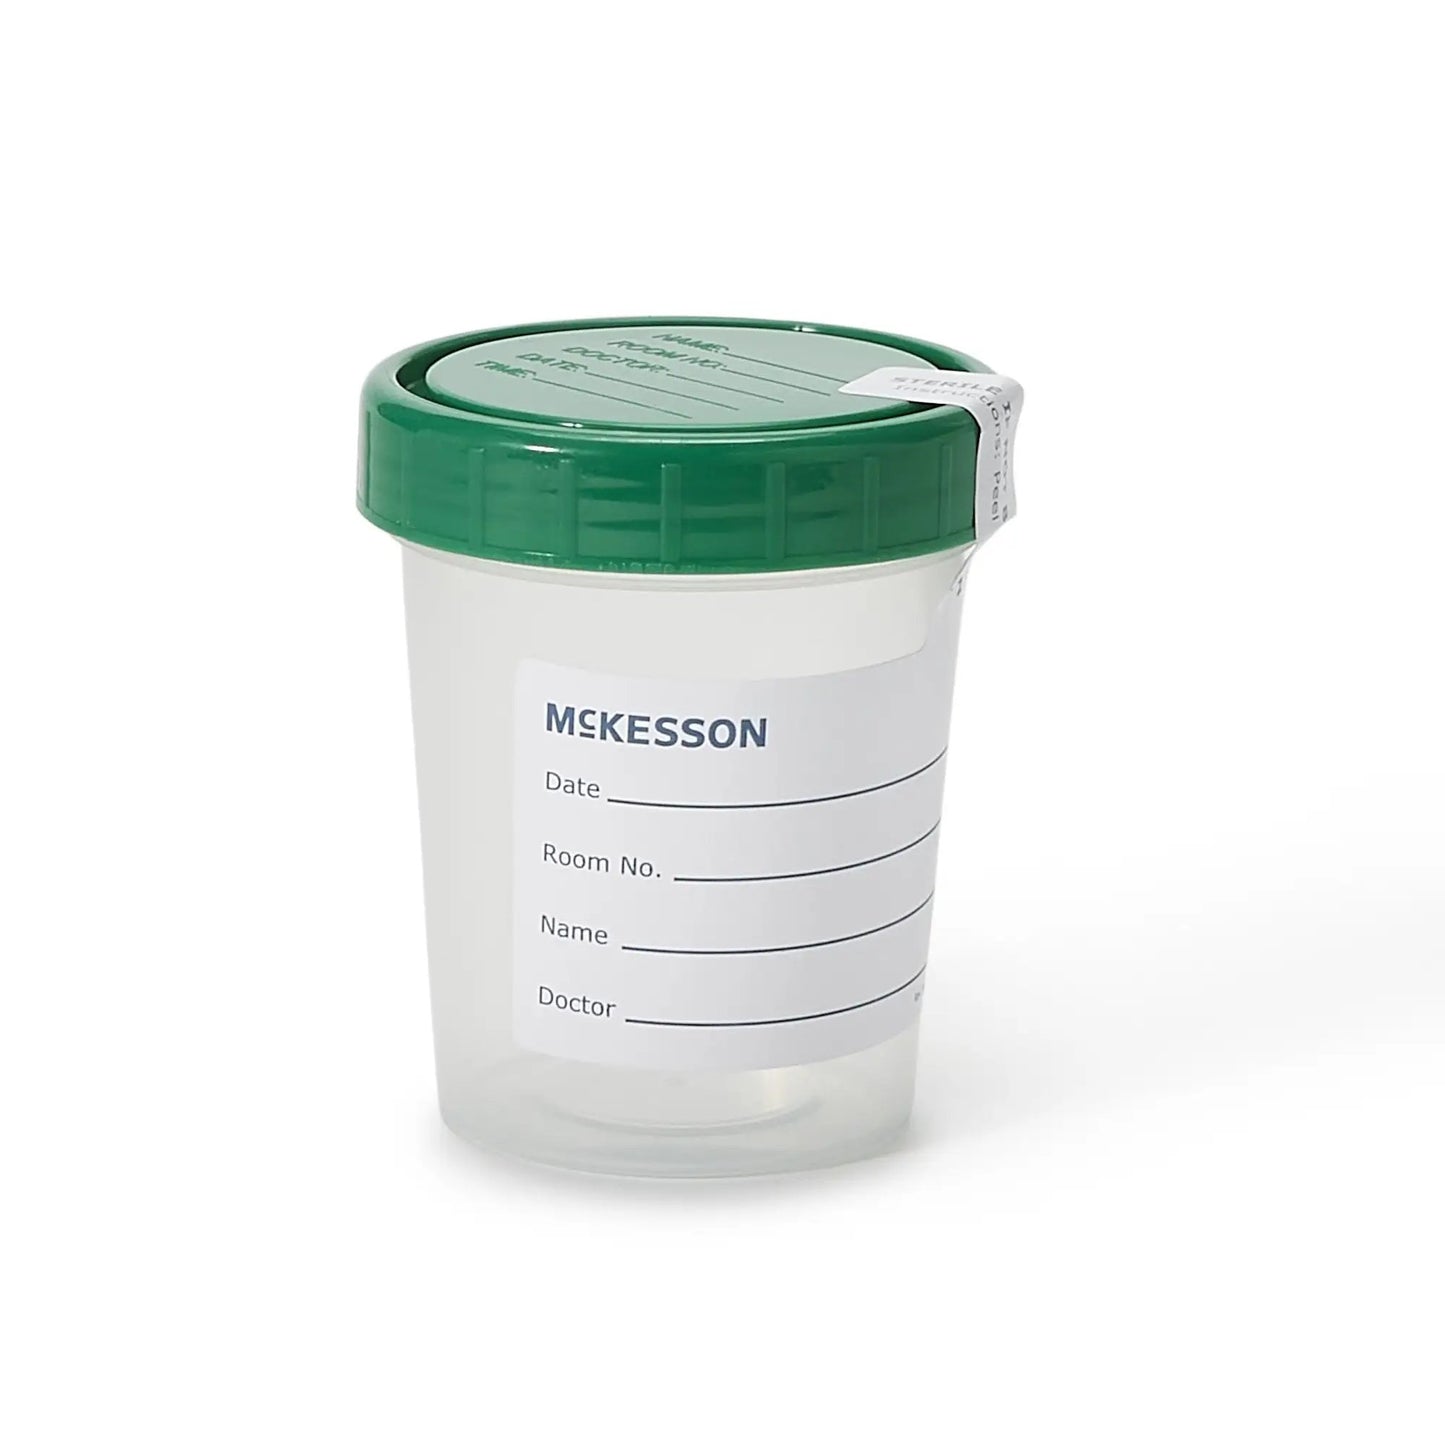 McKesson Specimen Container, 120 mL, 100 per Case